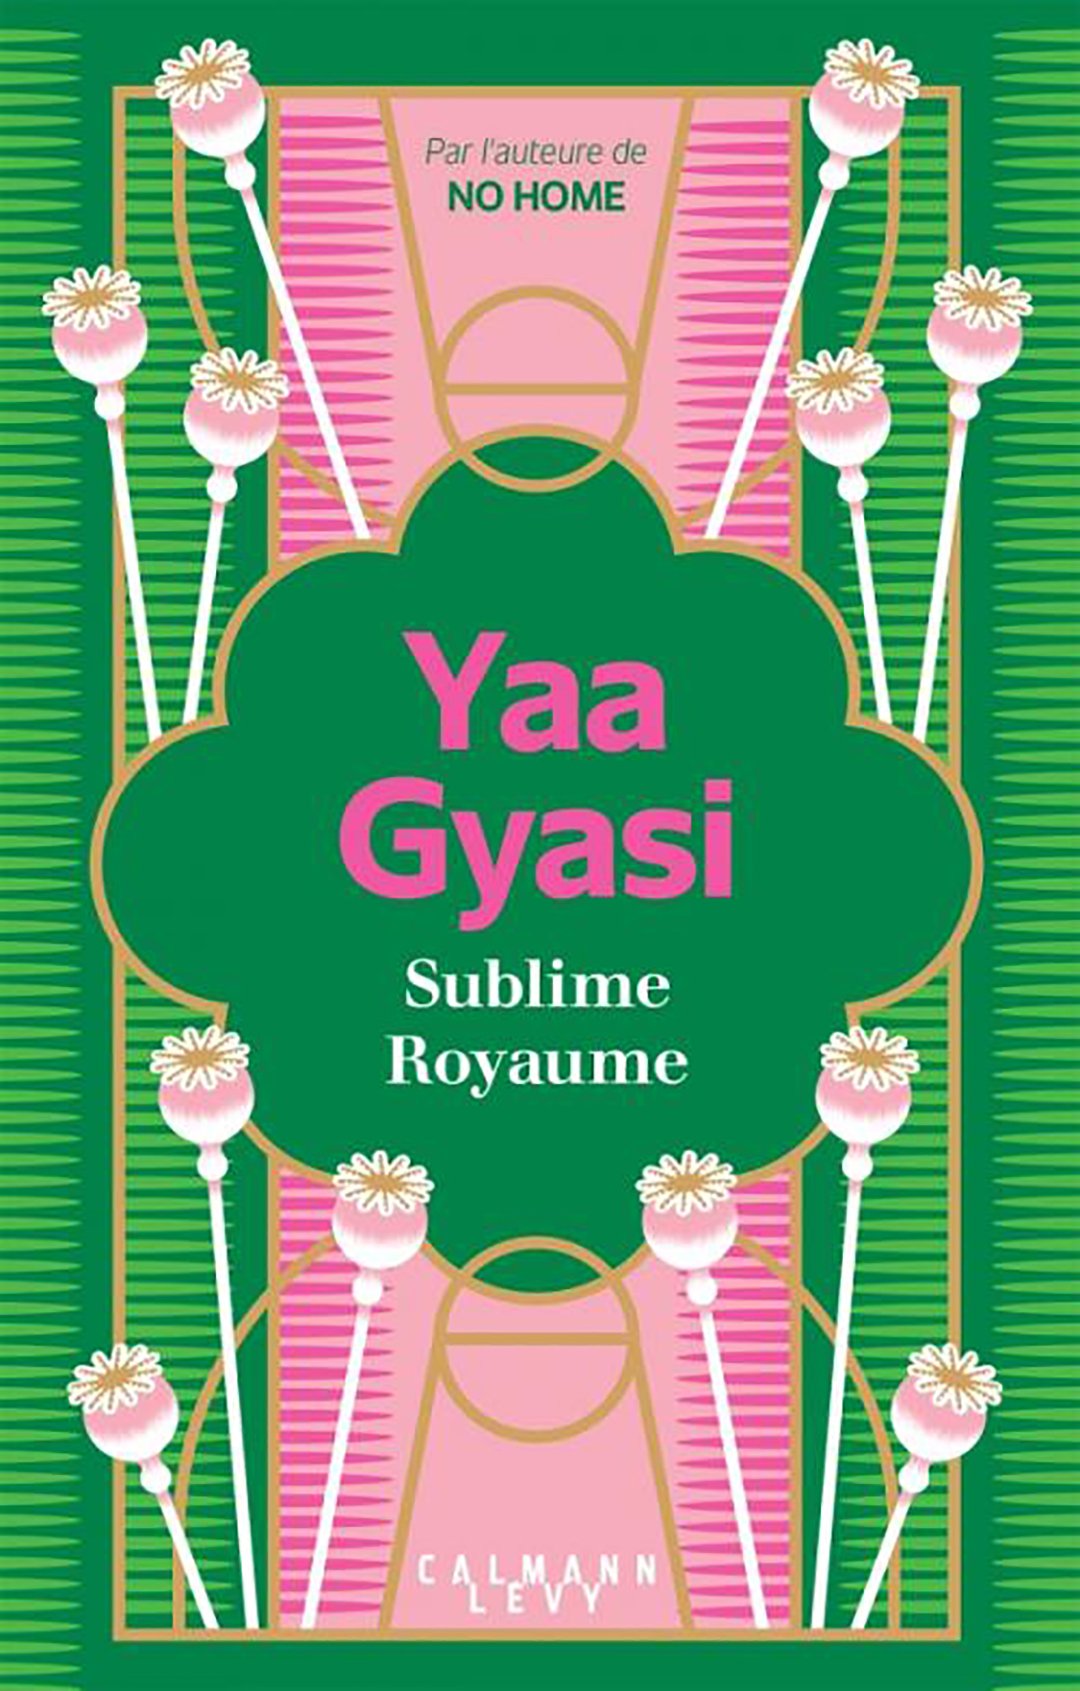 « Sublime Royaume », de Yaa Gyasi, a été traduit en français par Anne Damour. Il est paru aux éditions Calmann-Levy le 19 août (324 pp. 20,90 euros). Il sortira aux États-Unis en septembre.